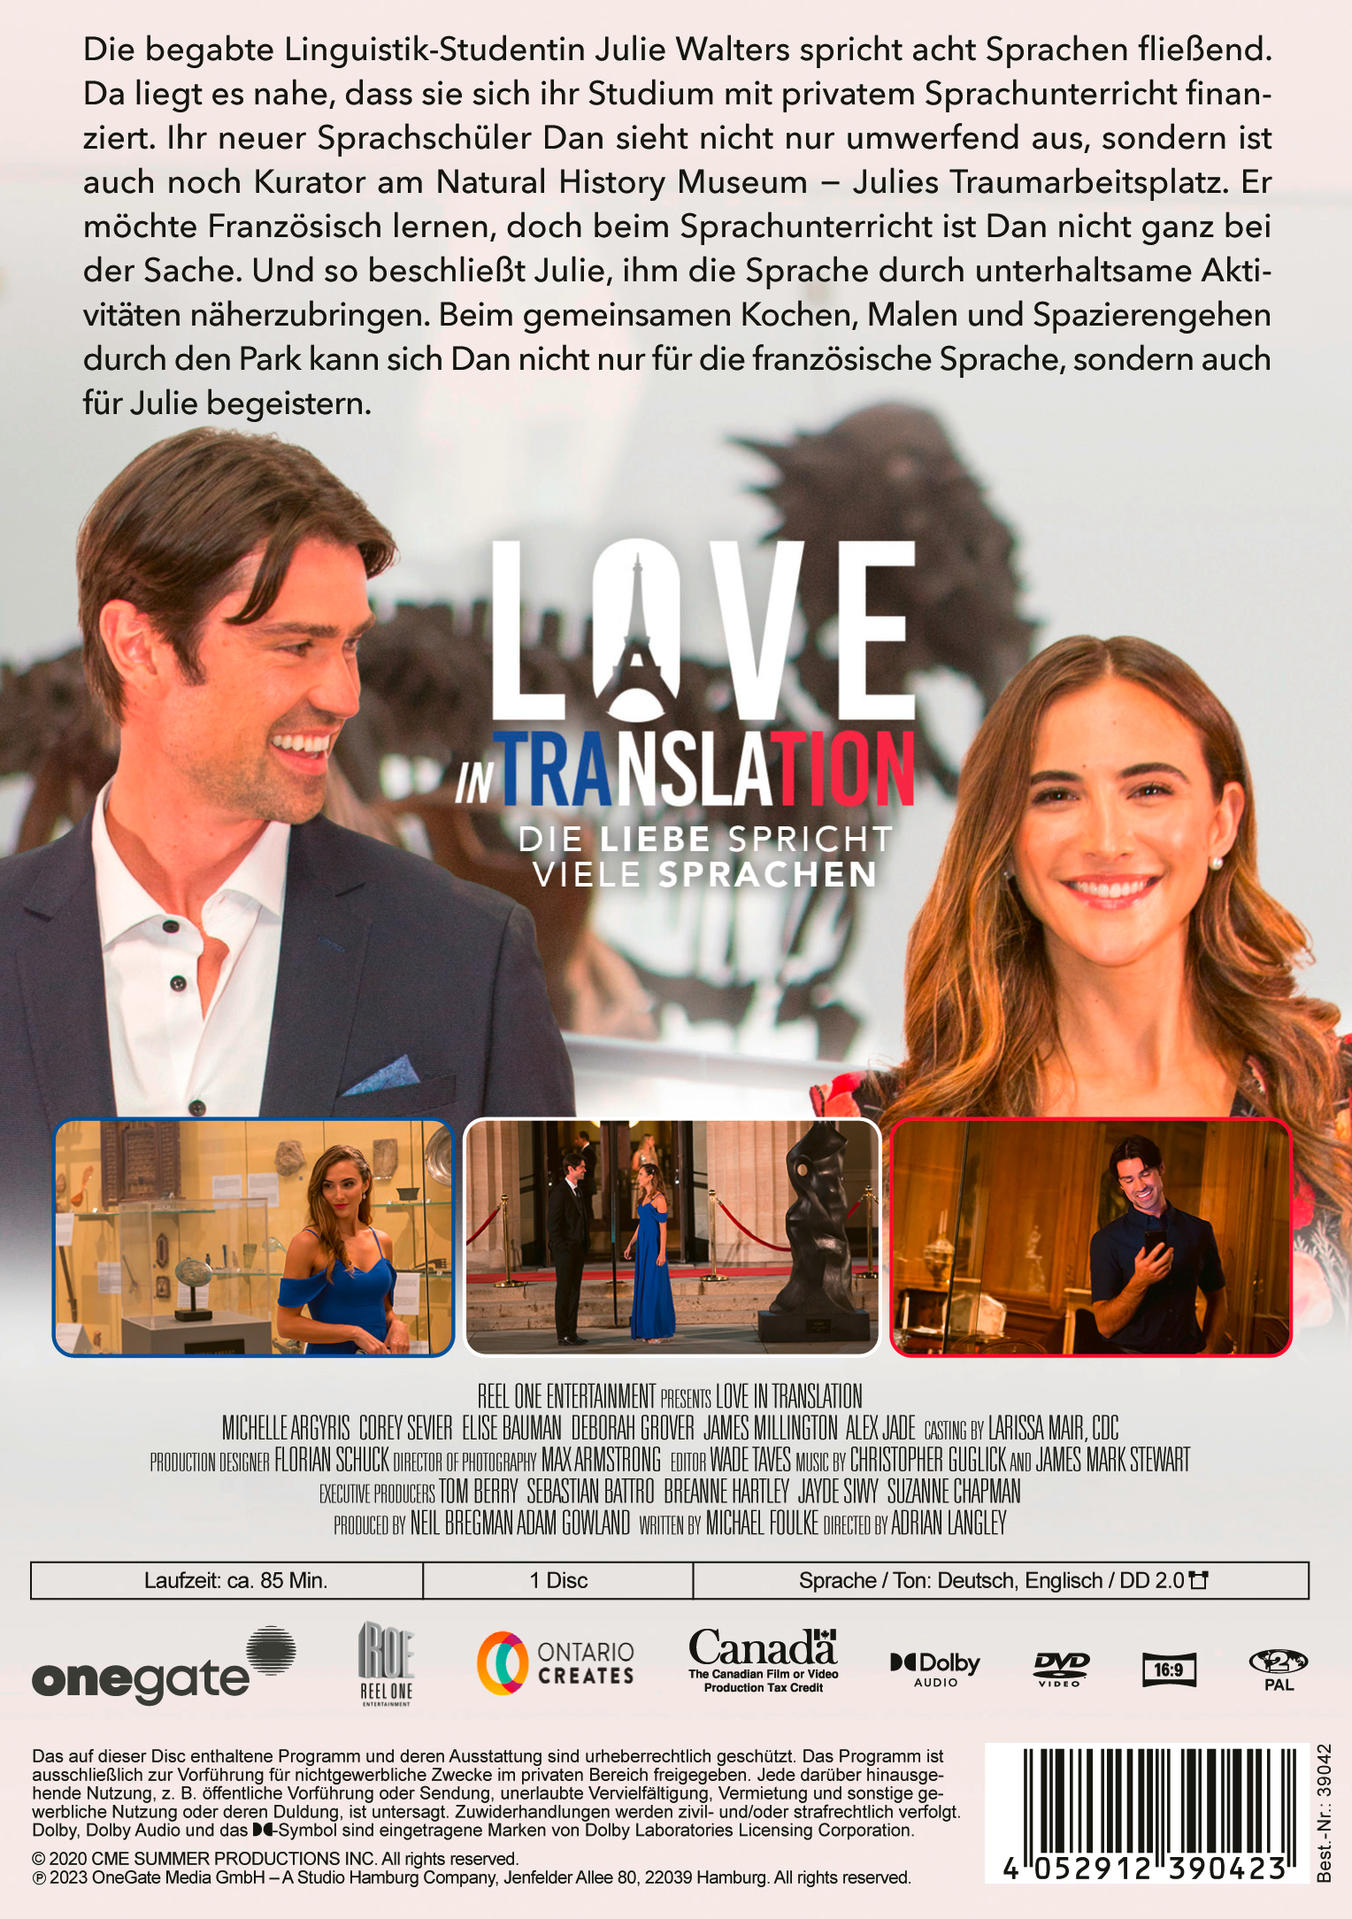 Die Liebe spricht Love - In Sprachen viele DVD Translation